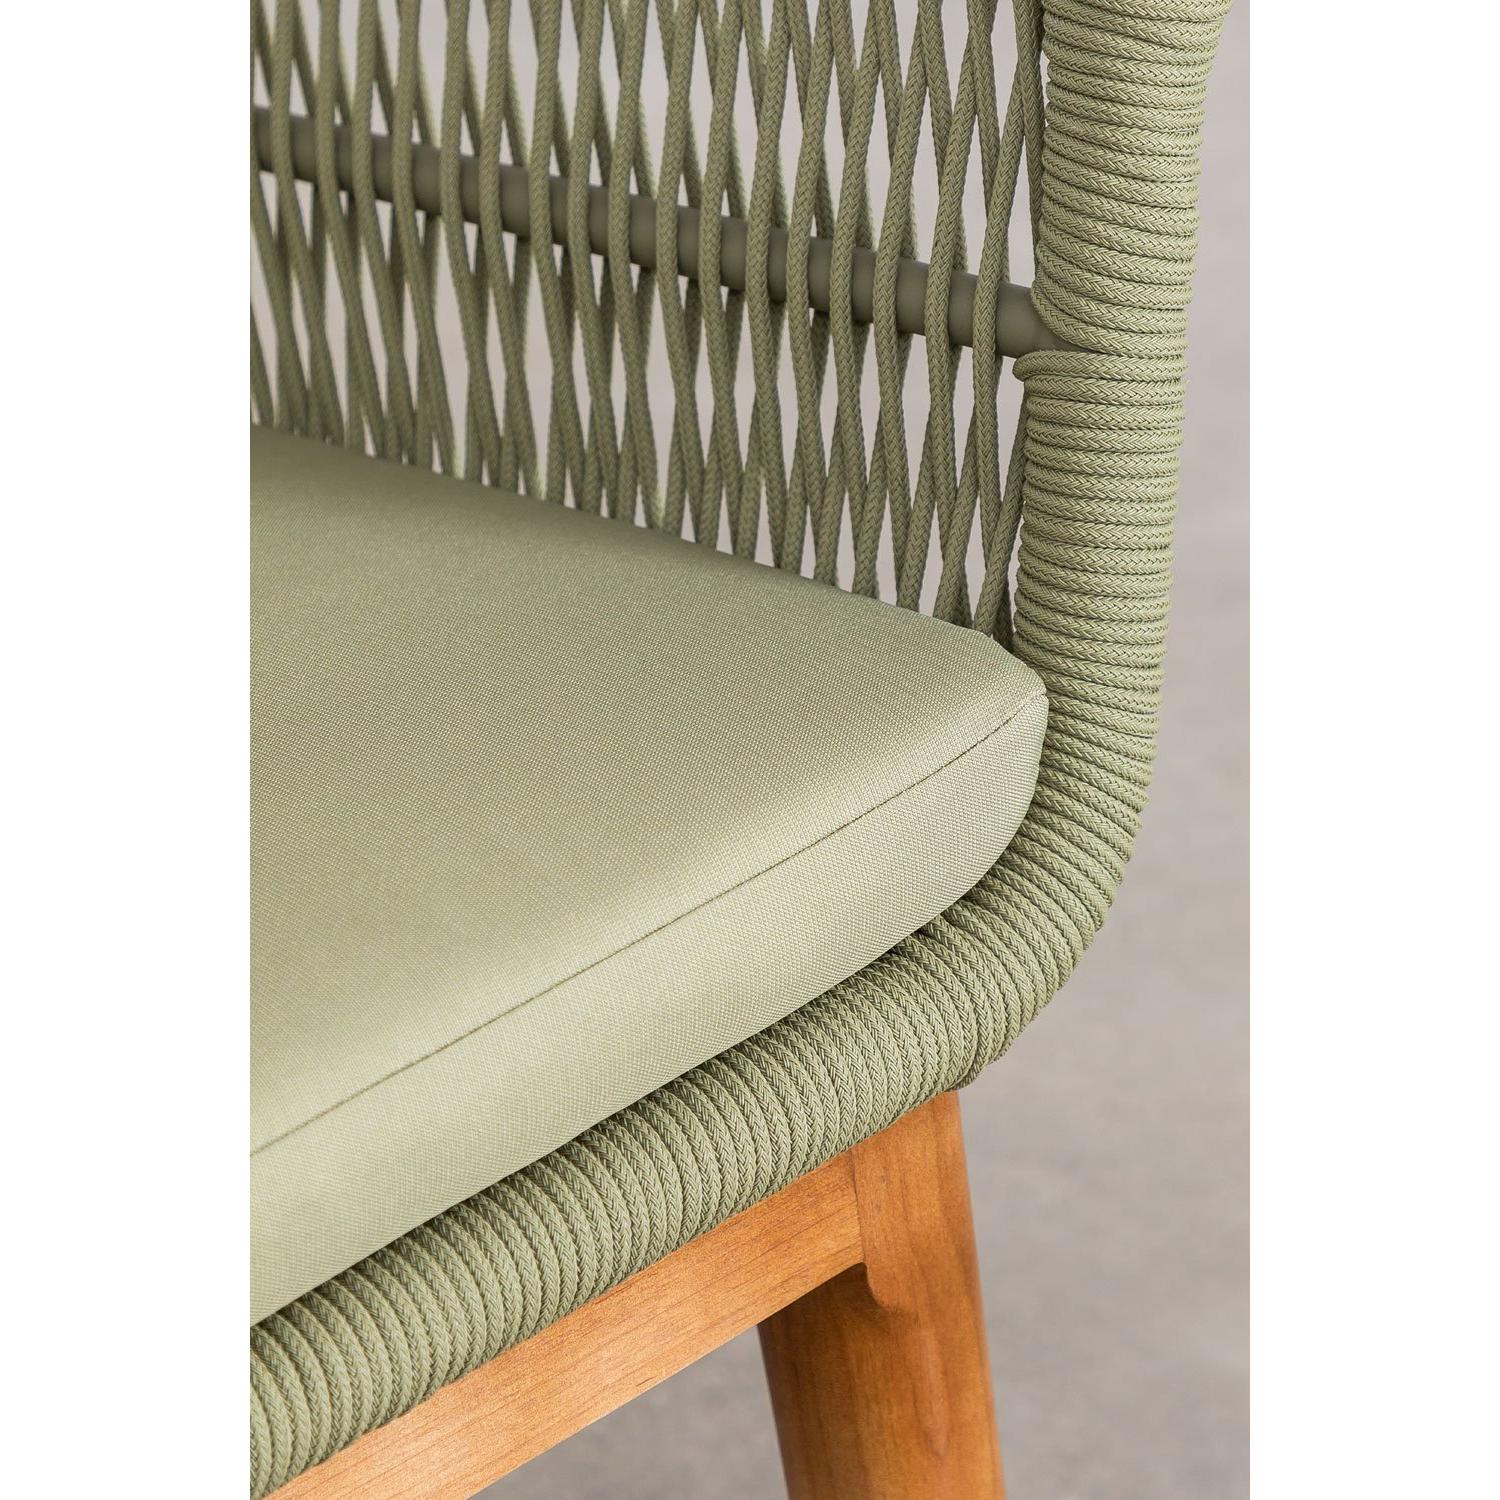 Lauko valgomojo komplektas PARK, stalas (90-150x90 cm), 6 vnt. sodo kėdės, žalia spalva